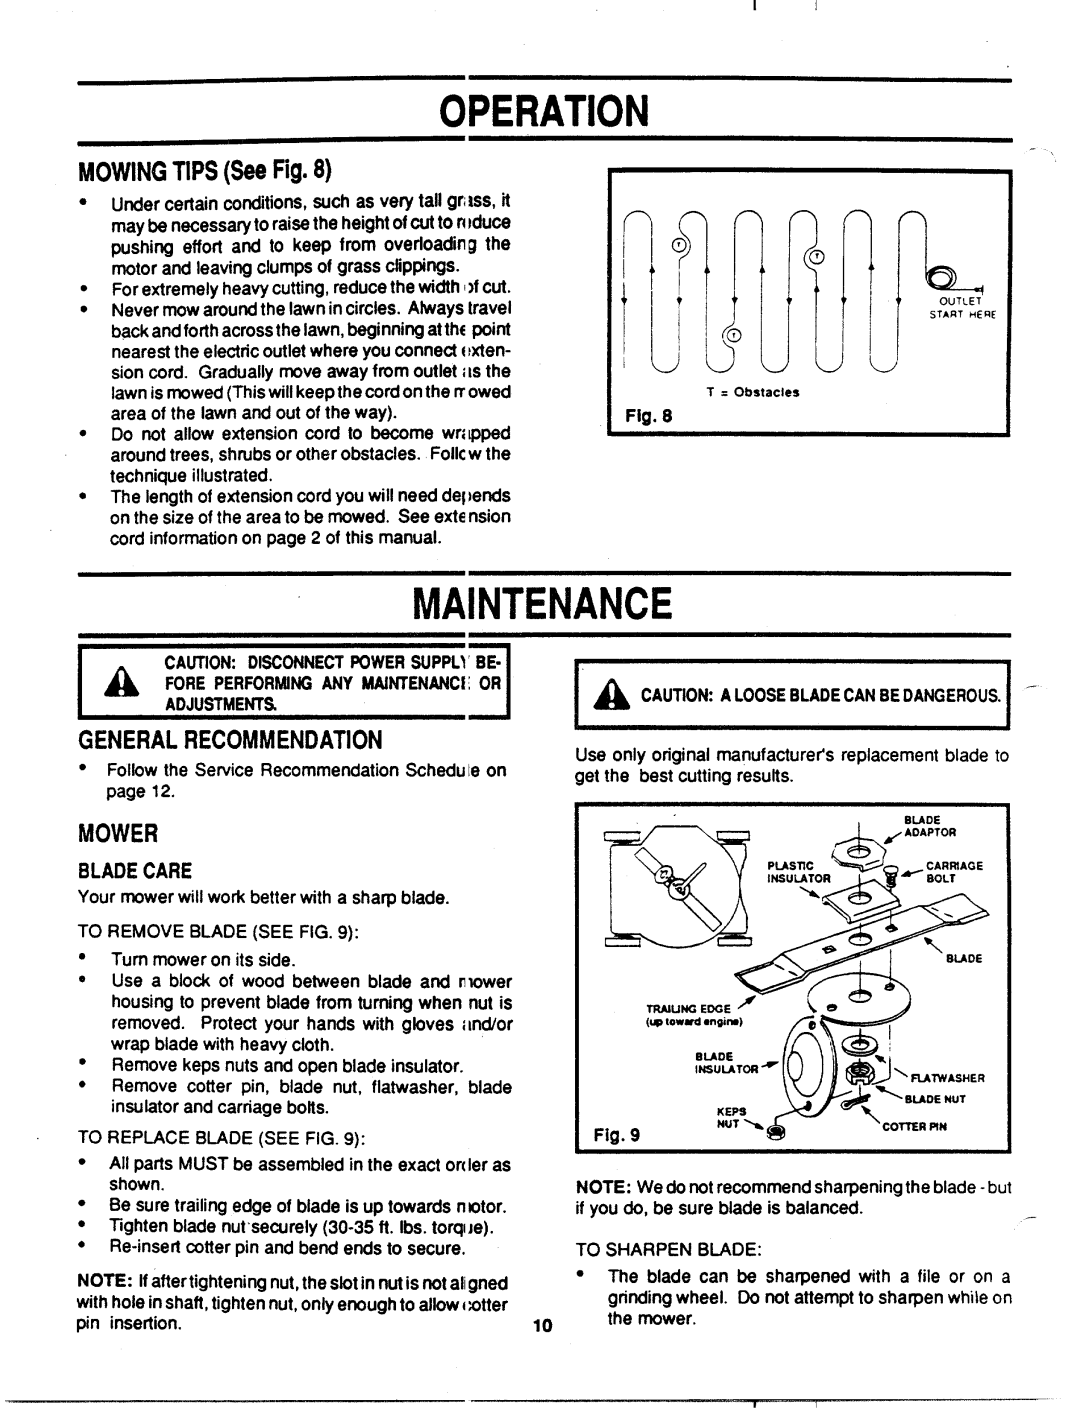 MTD 181-014J000 manual 